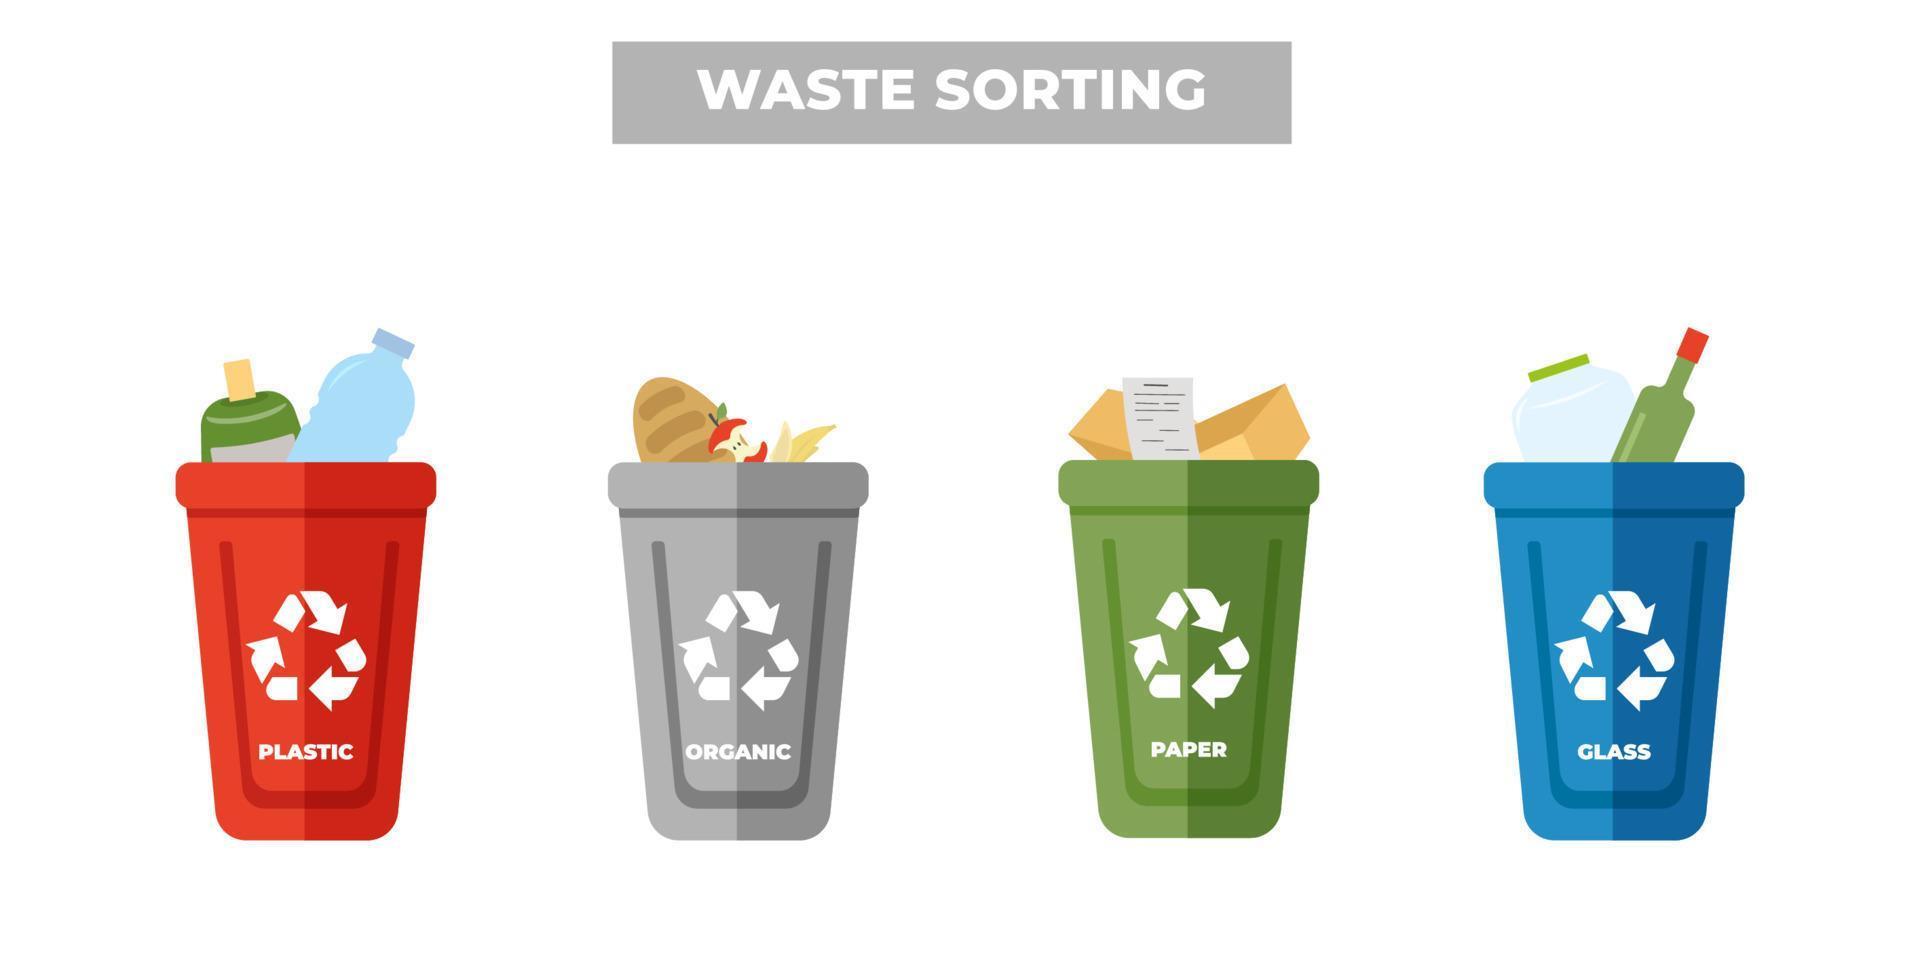 clasificación de residuos por material y tipo en botes de basura de colores, infografías vectoriales sobre la separación y reciclaje de basura. vector